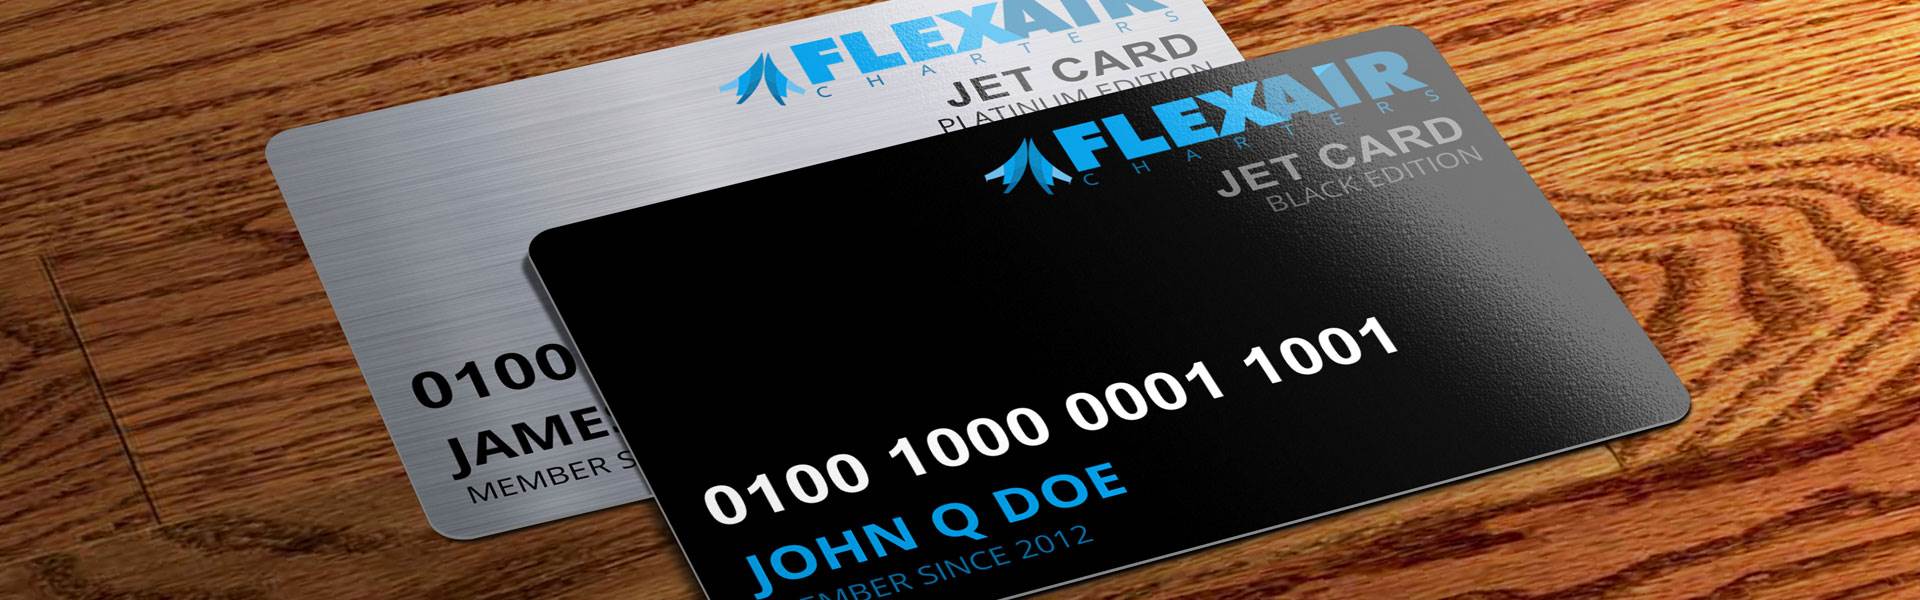 Flex Air Jet Card Membership